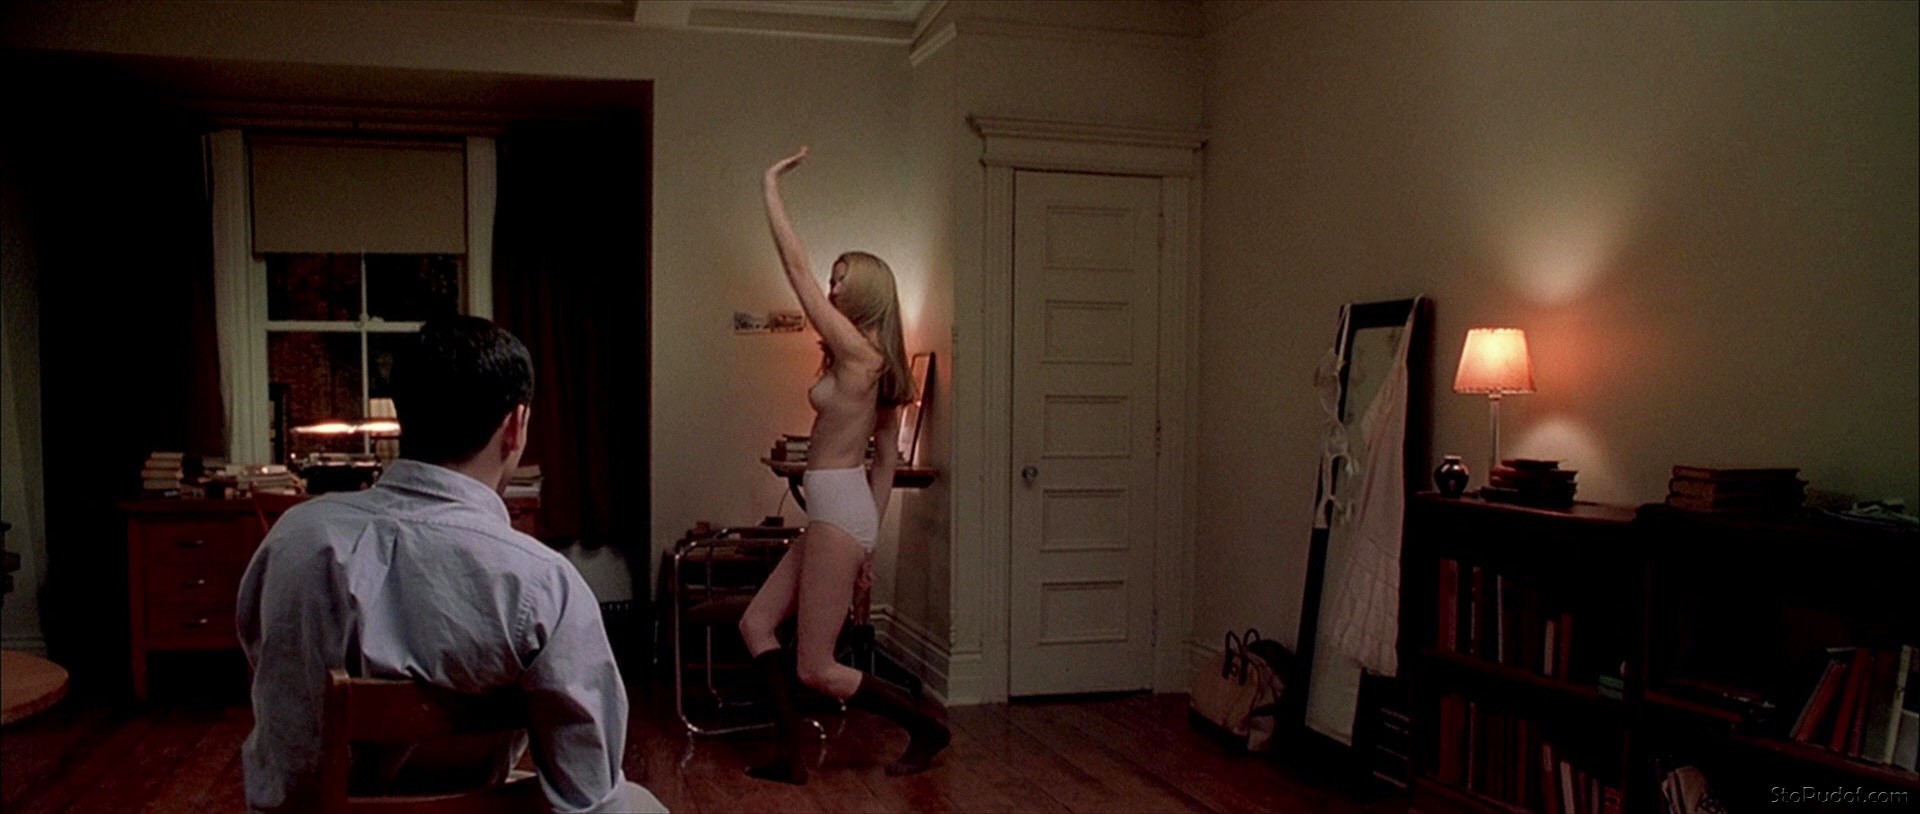 68 Jacinda Barrett Nude Pictures: Boobs, ASS.